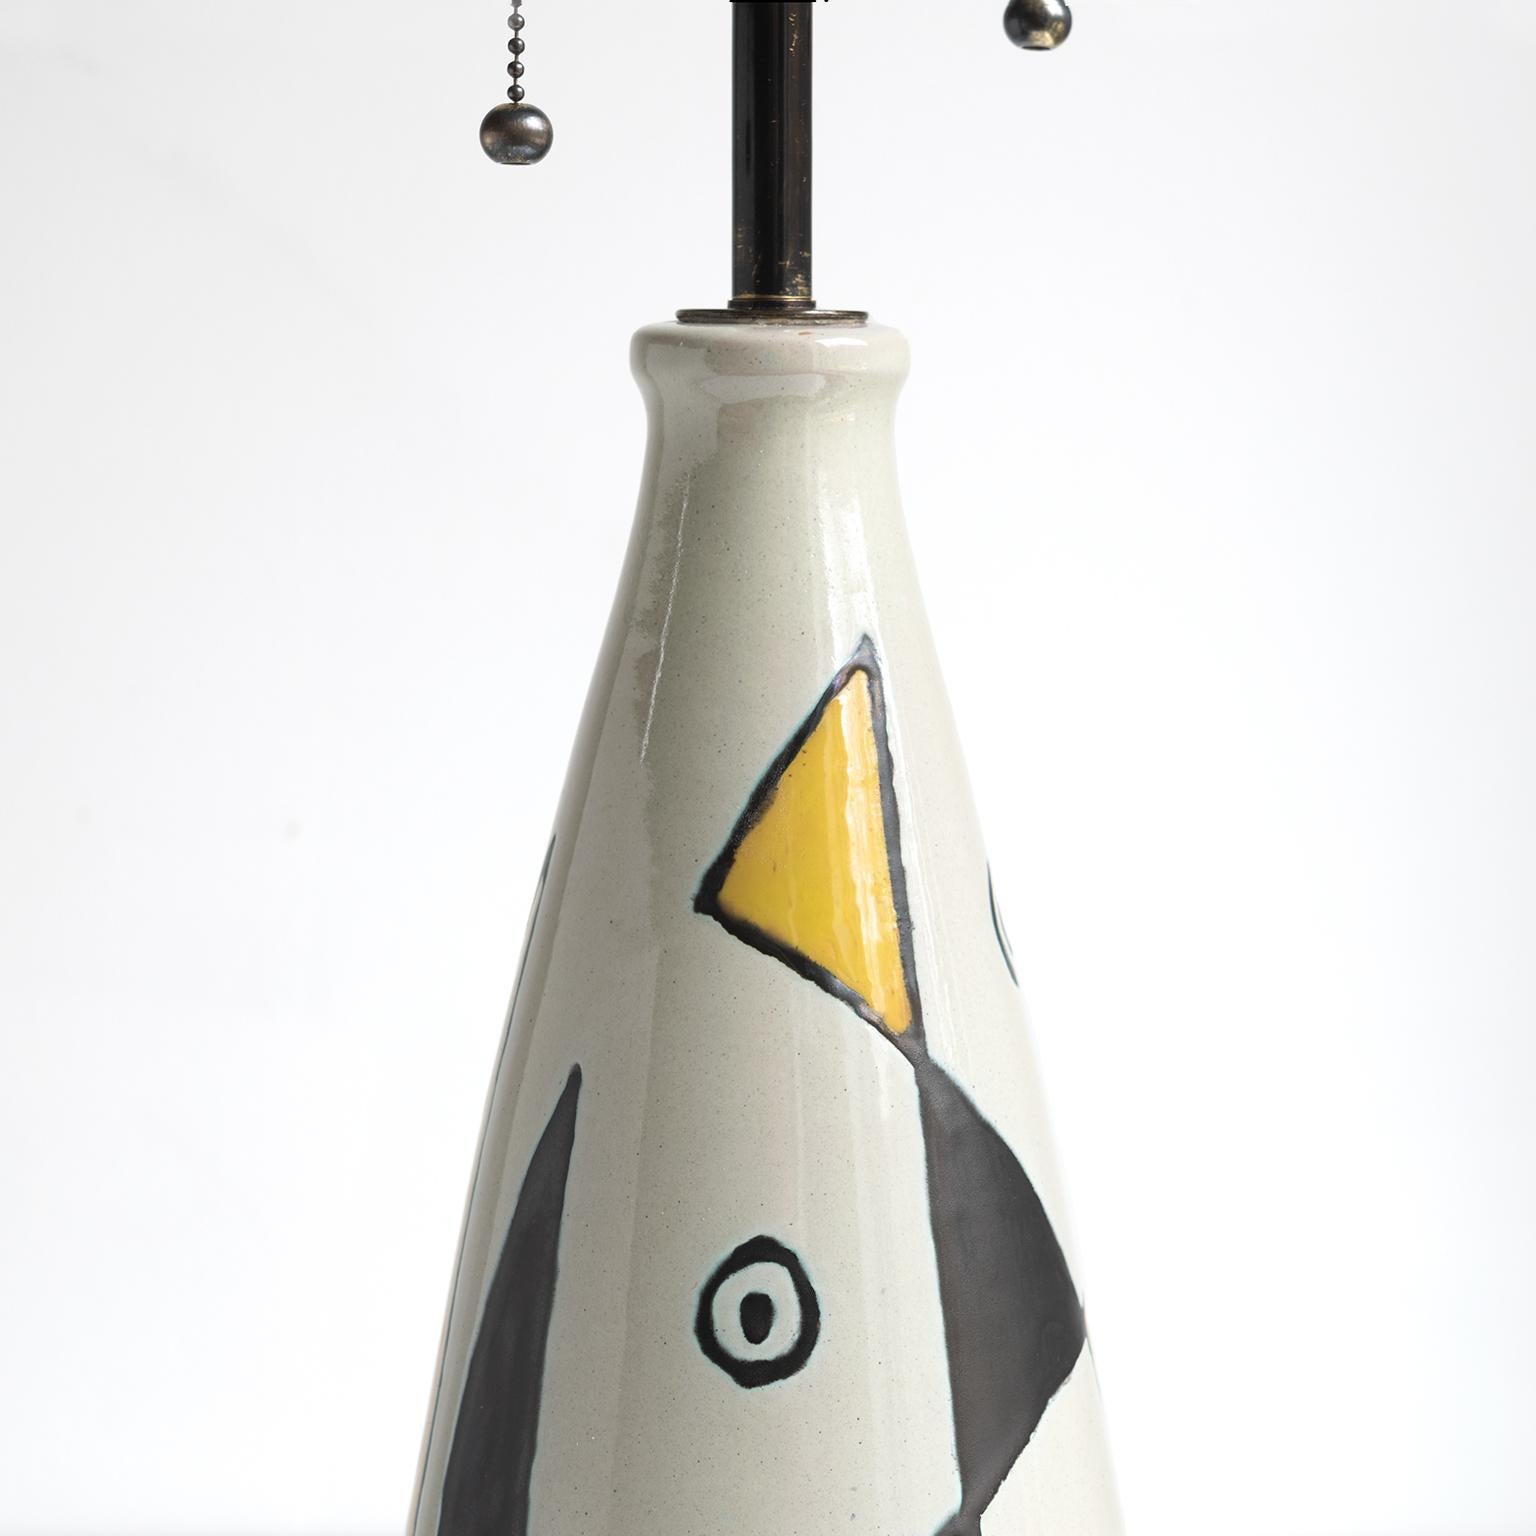 Axel Bruel Scandinavian Modern Ceramic Lamp, Denmark, 1950's For Sale 2